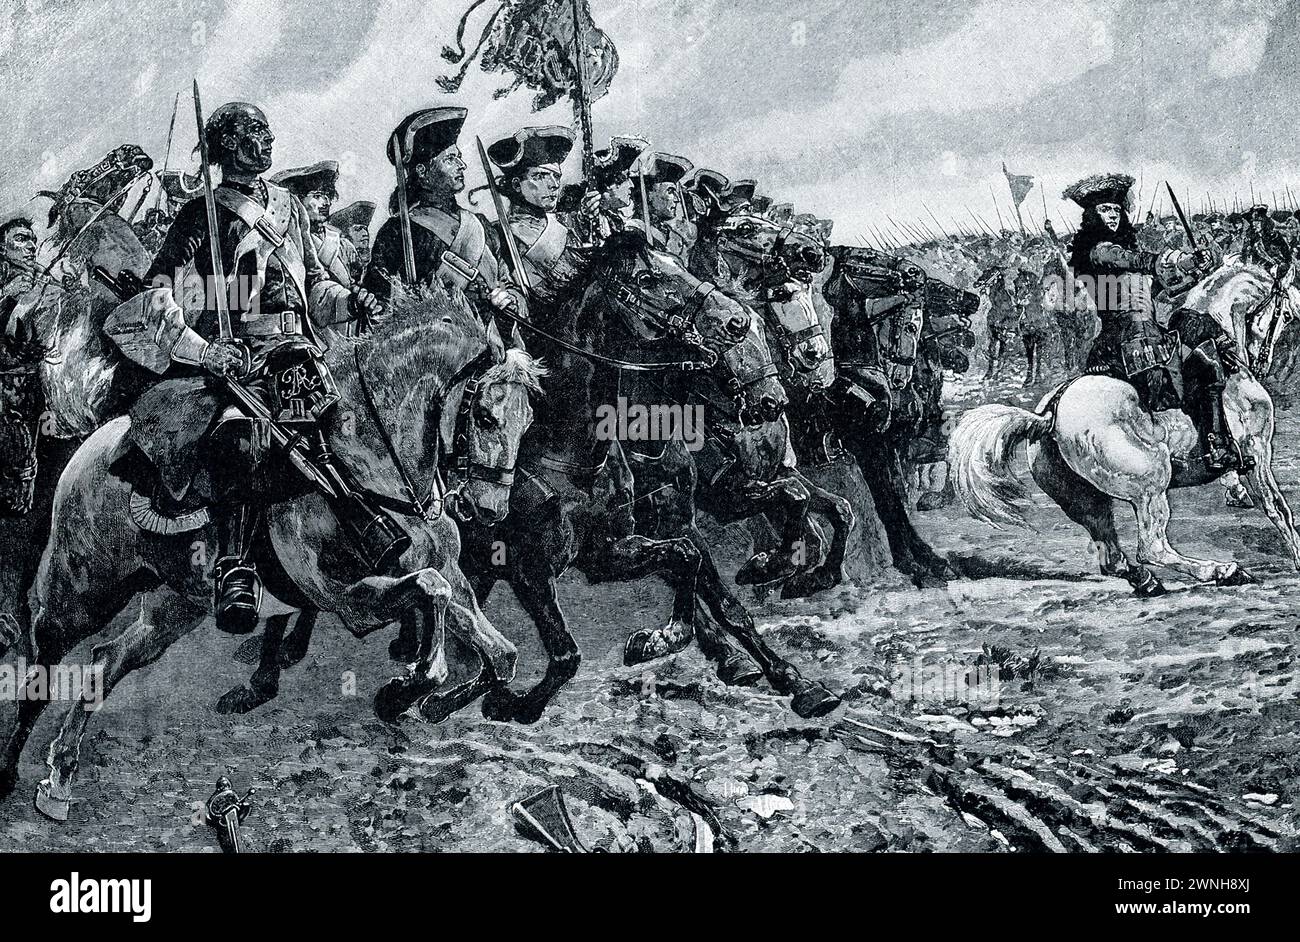 RAMILLIES - LA CHARGE DE CAVALERIE SOUS MARLBOROUGH. - La petite ville belge de Ramillies a été le théâtre de la deuxième grande bataille de Marlborough dans la guerre de succession d'Espagne. Soldat anglais et homme d'État, le duc de Marlborough chassa les Français de Flandre et arracha cette riche province à Louis XIV Nous voyons le courageux et beau général, alors qu’il dirige ses sinistres vétérans dans la dernière charge de cavalerie qui a gagné le jour, le 23 mai 1706. Banque D'Images